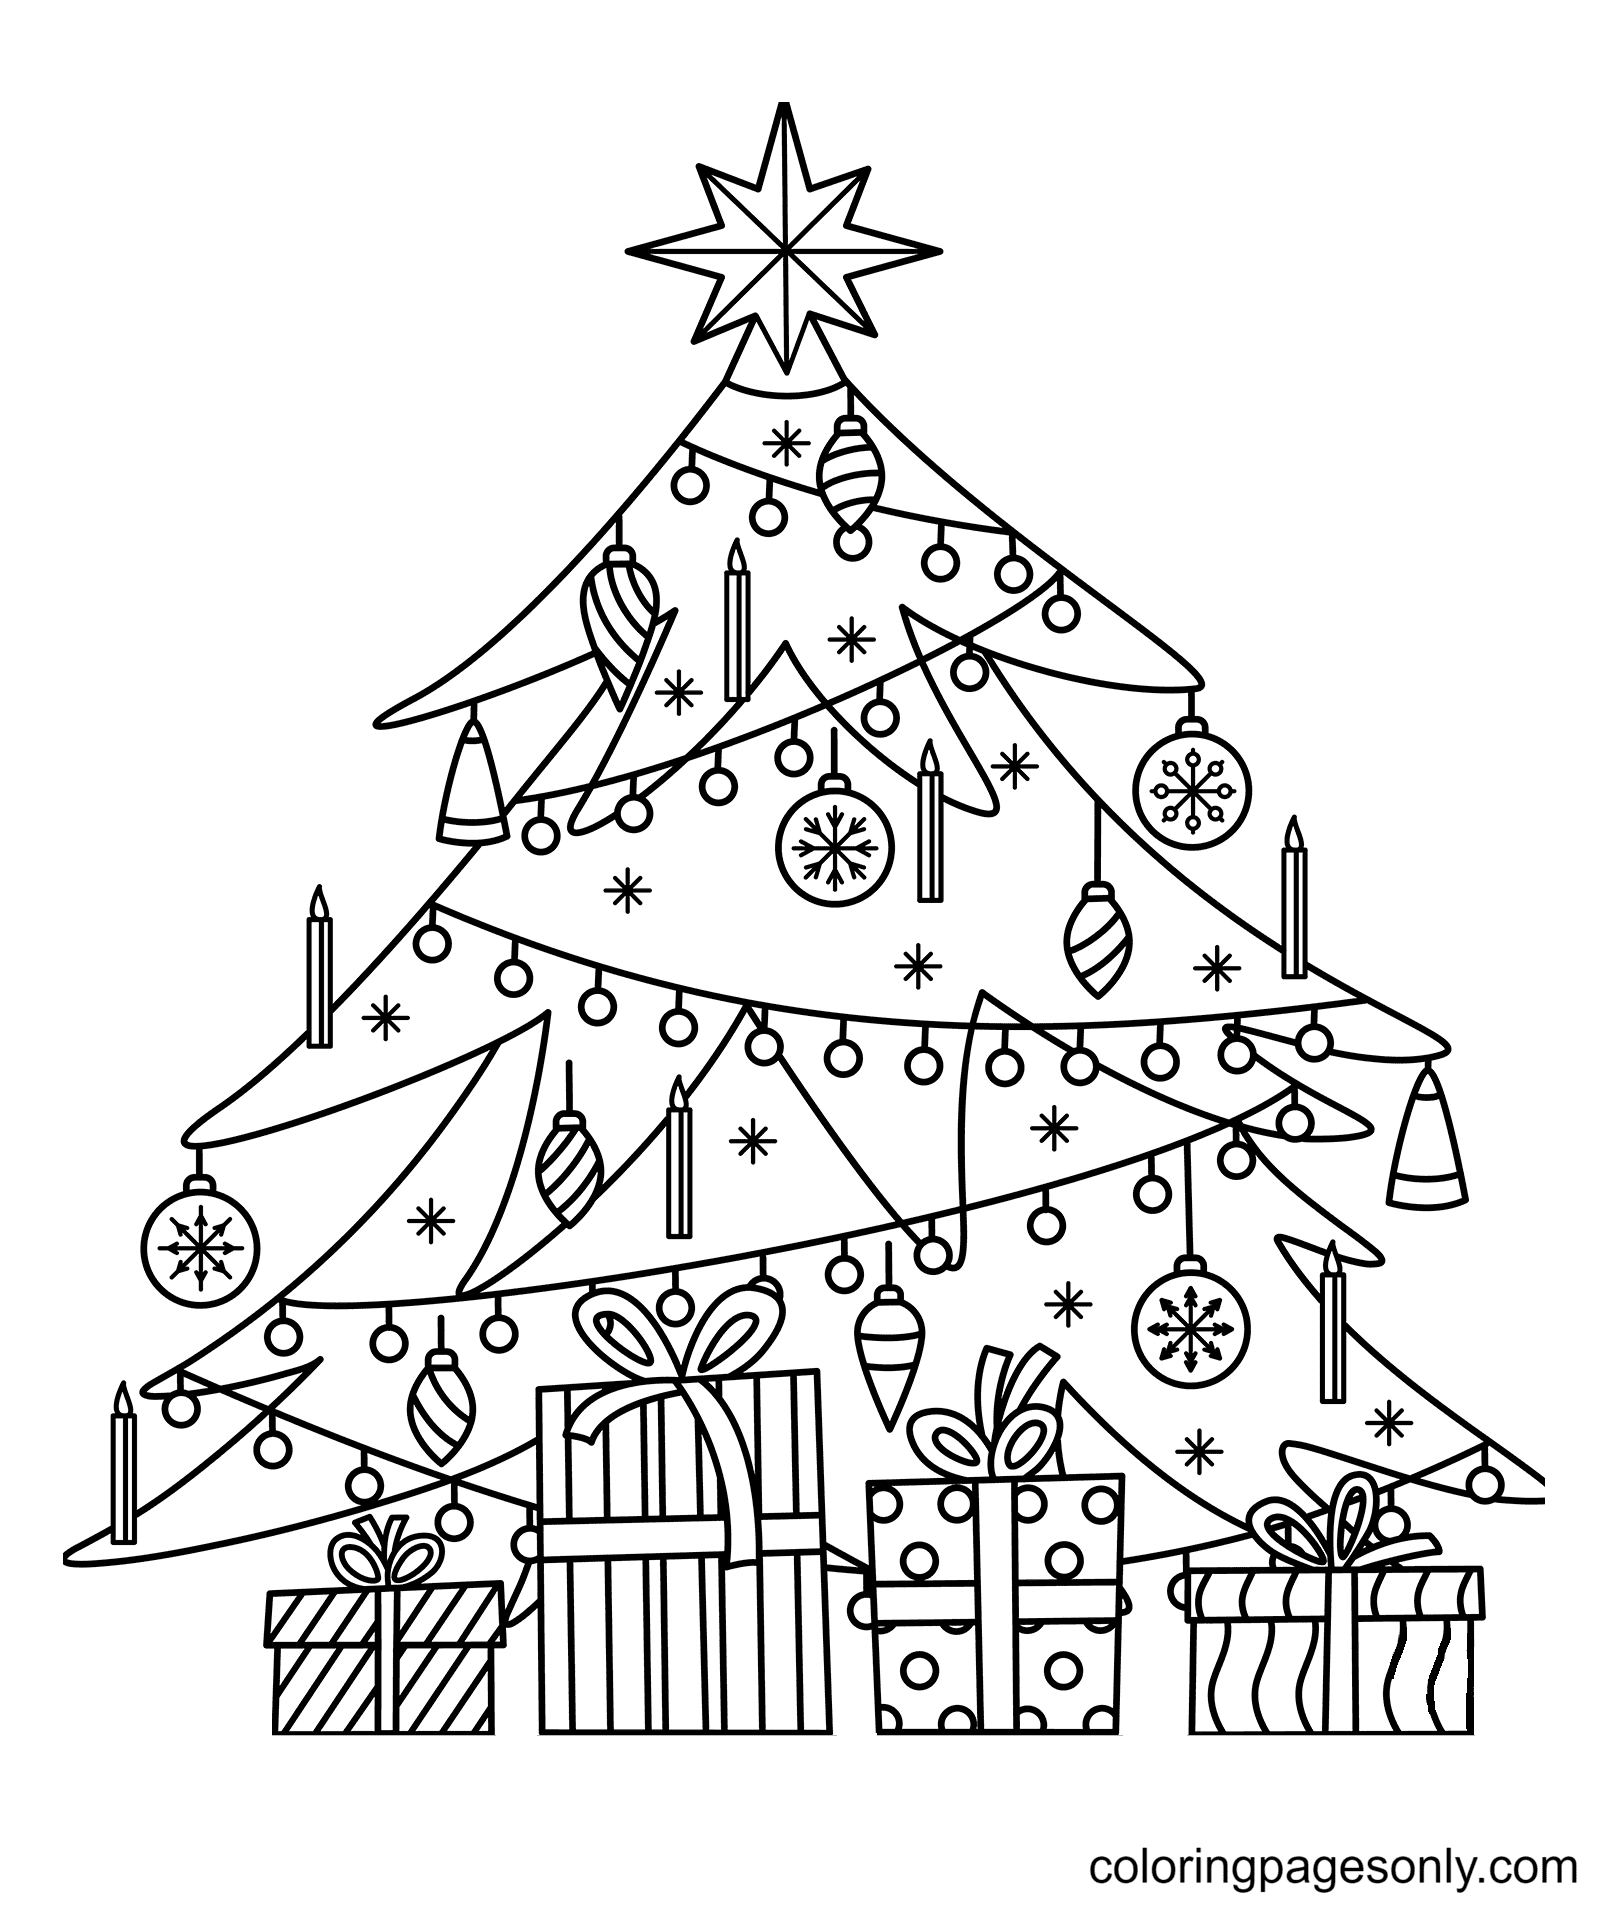 free-printable-christmas-tree-images-printable-templates